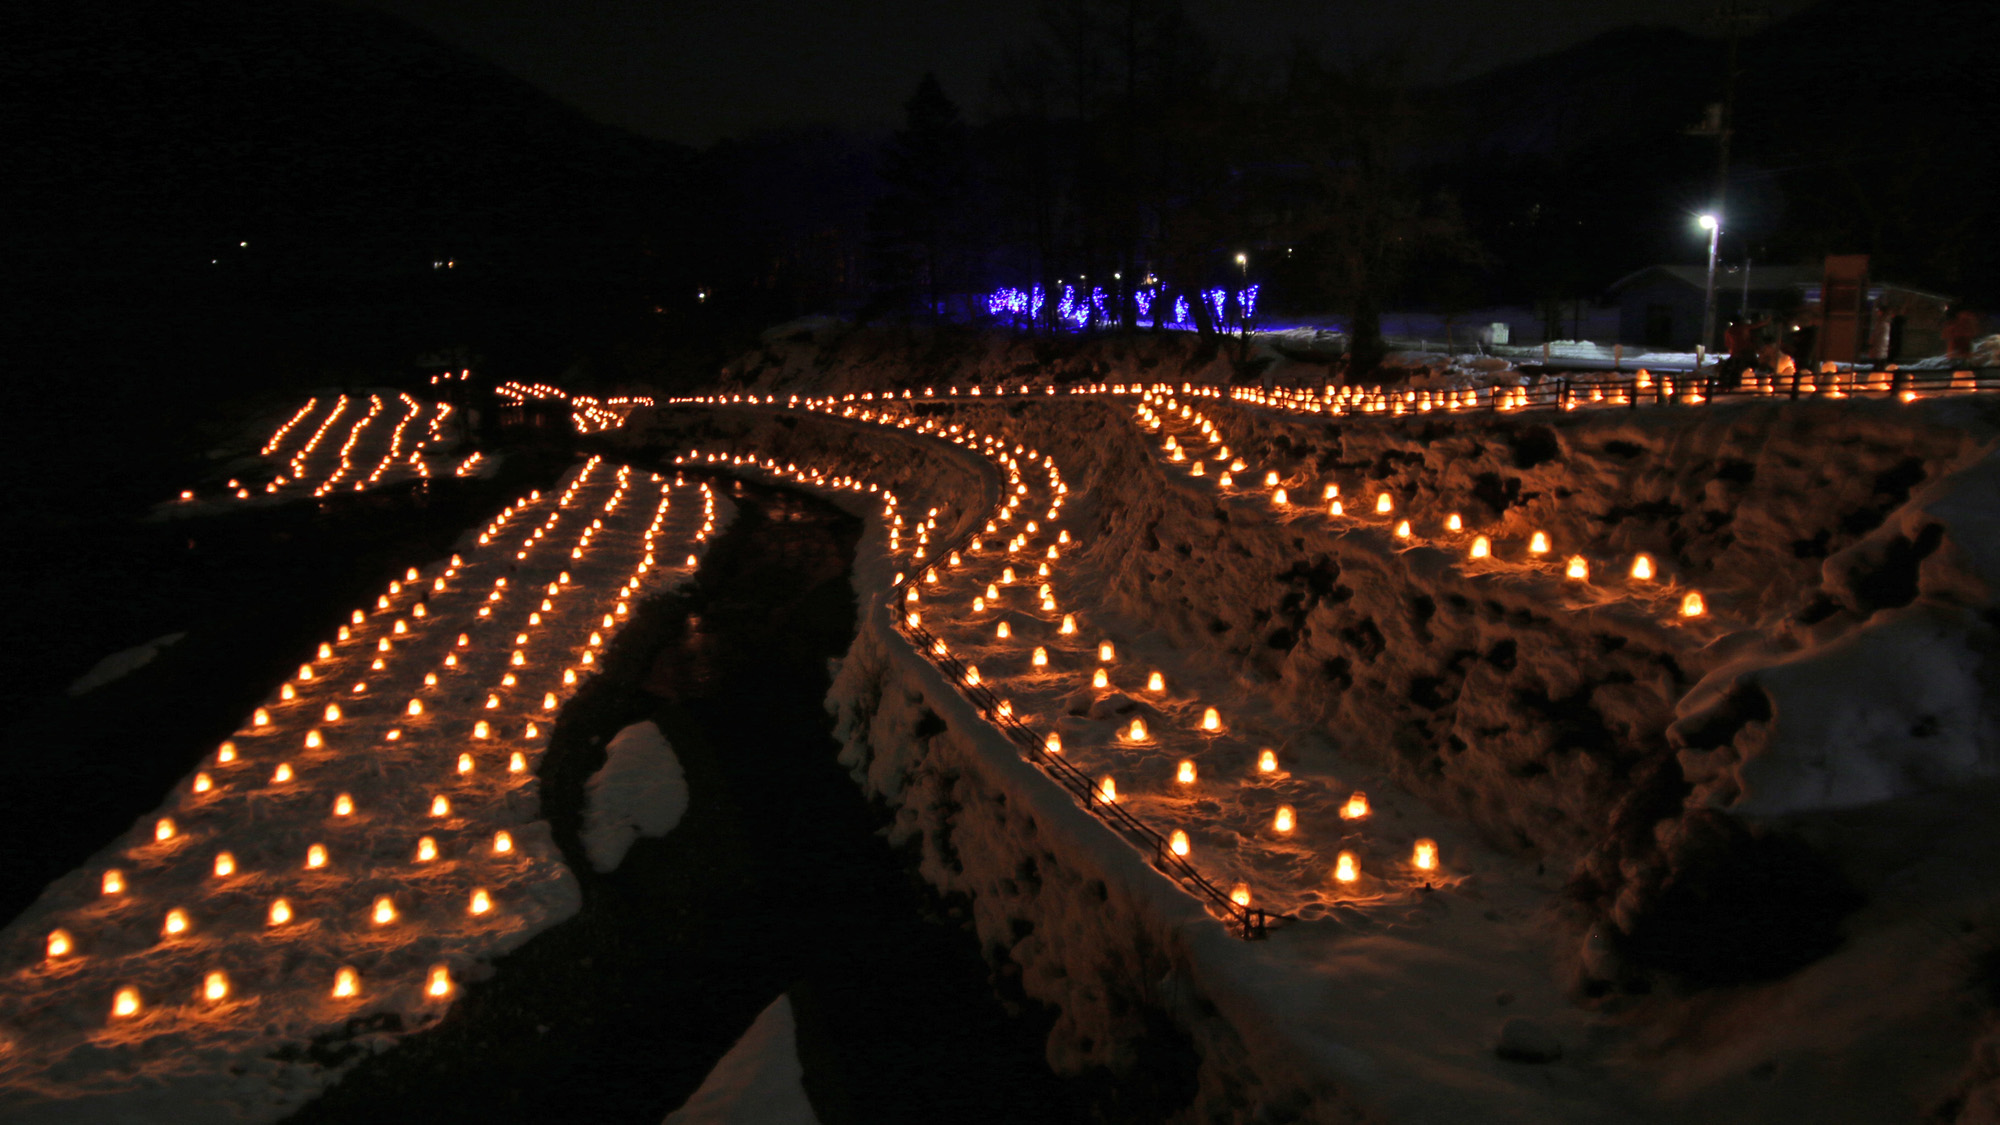 #日本夜景遺産「歴史文化夜景遺産」認定イベント湯西川かまくら祭り